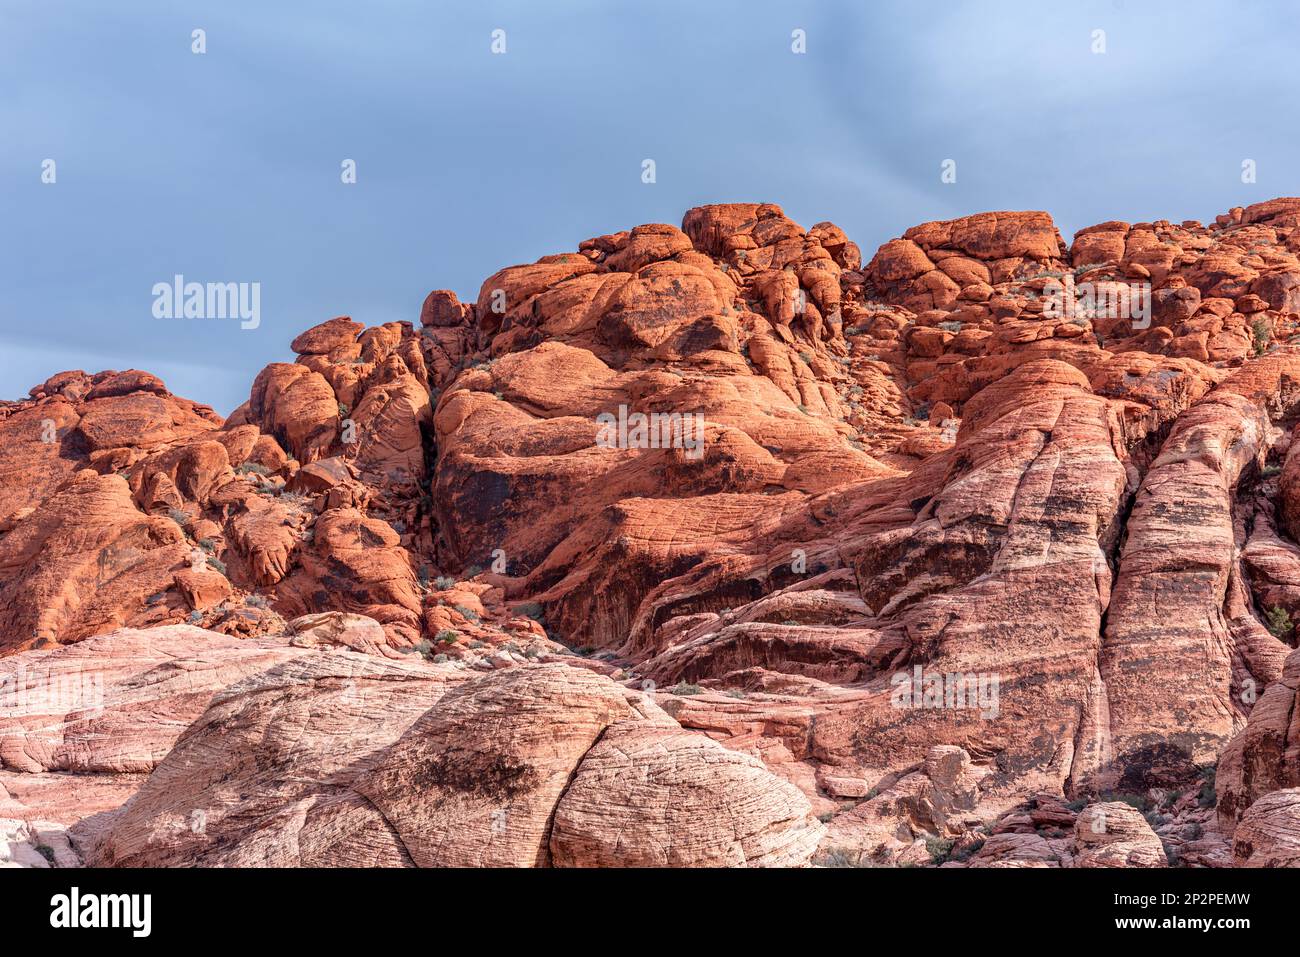 Una bella, arida, aspra e montuosa scena nella natura selvaggia del Red Rock Canyon a Las Vegas, Nevada. Foto Stock